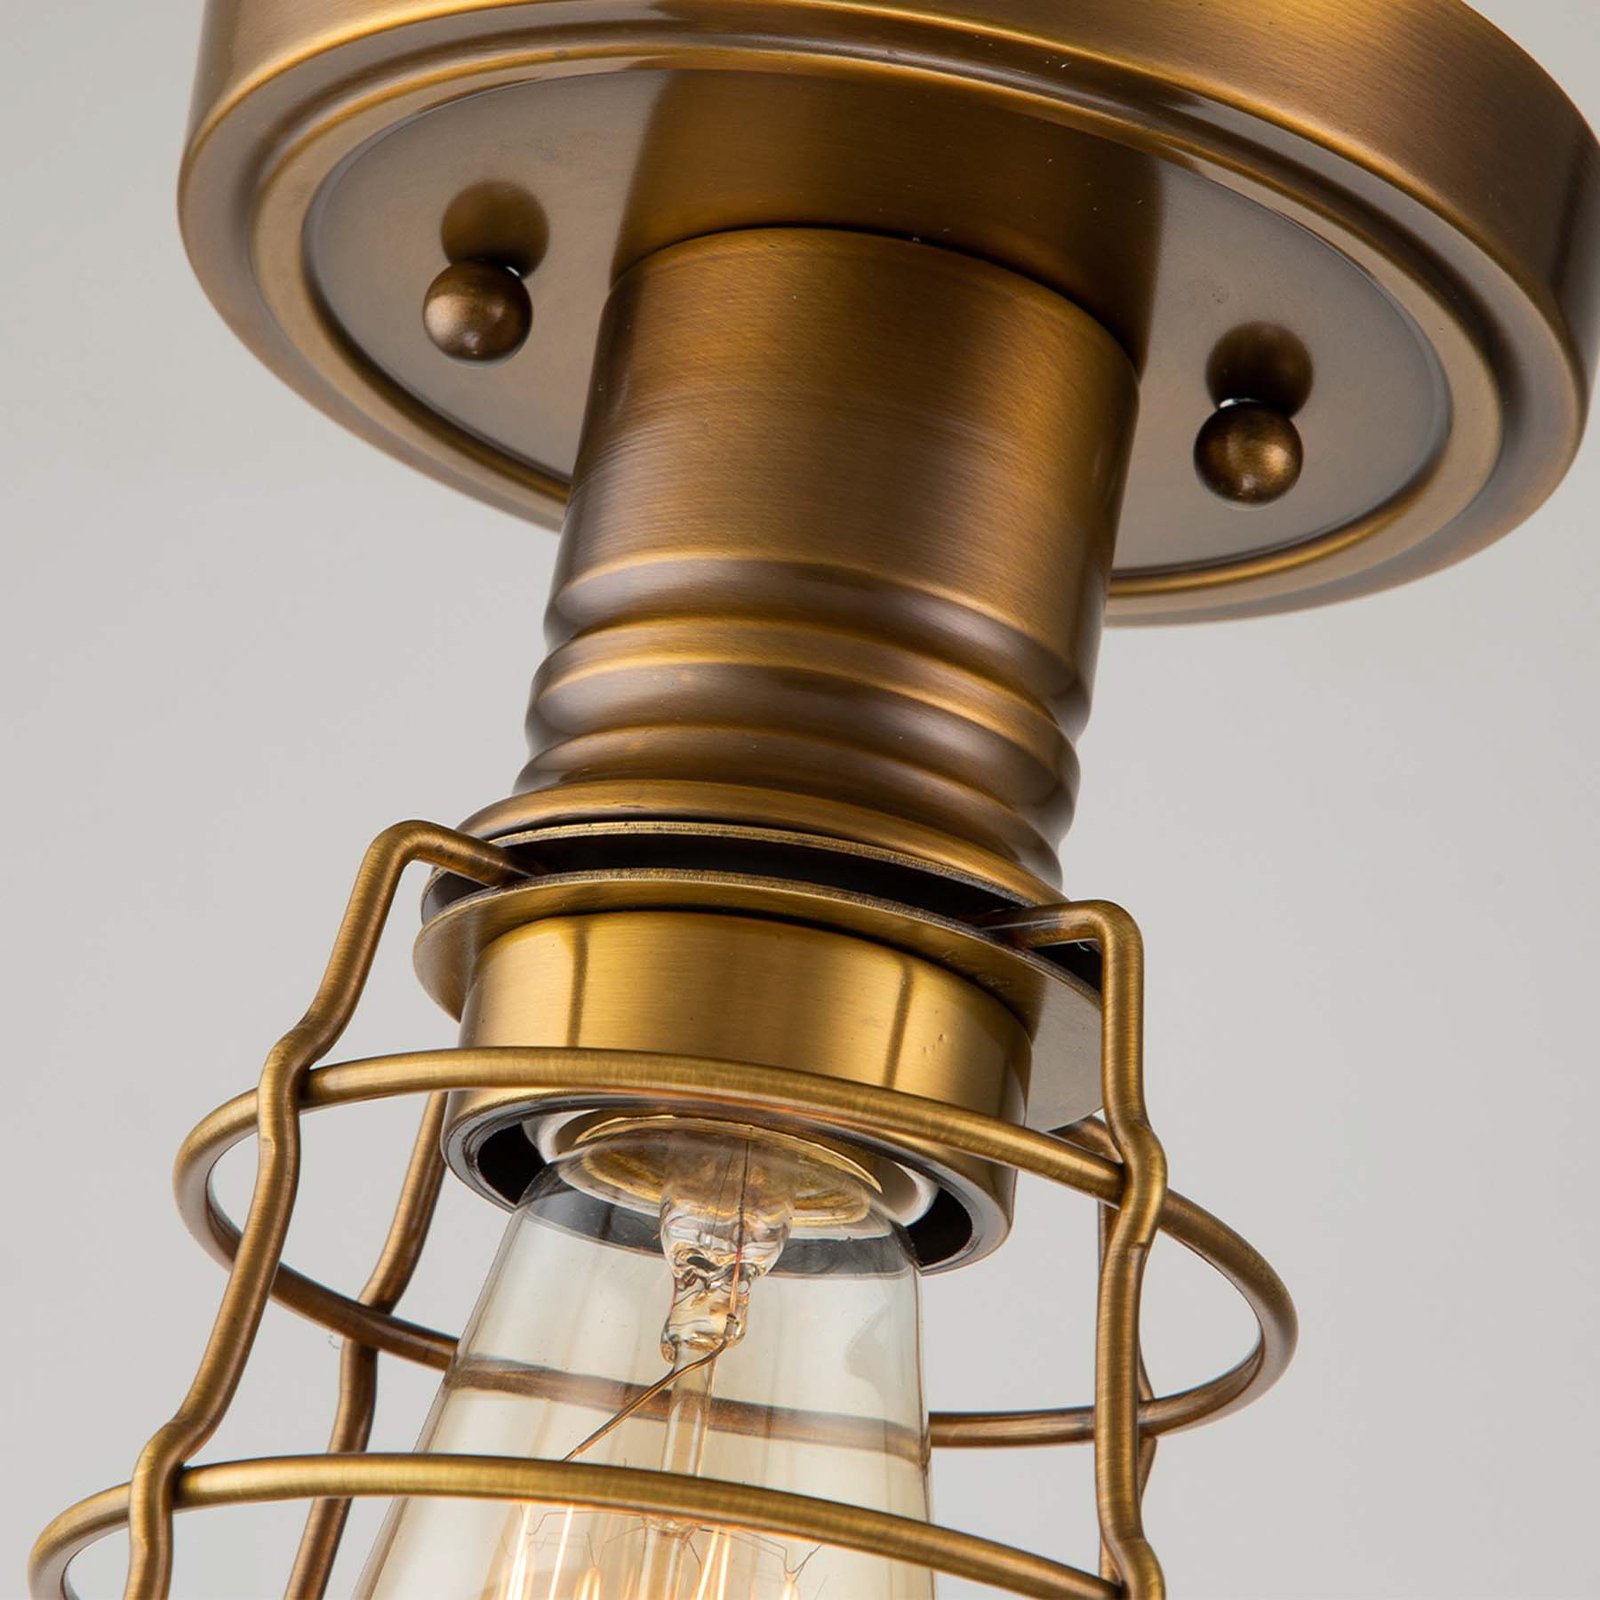 Stropna svetilka Mixon s kovinsko kletko, antična medenina